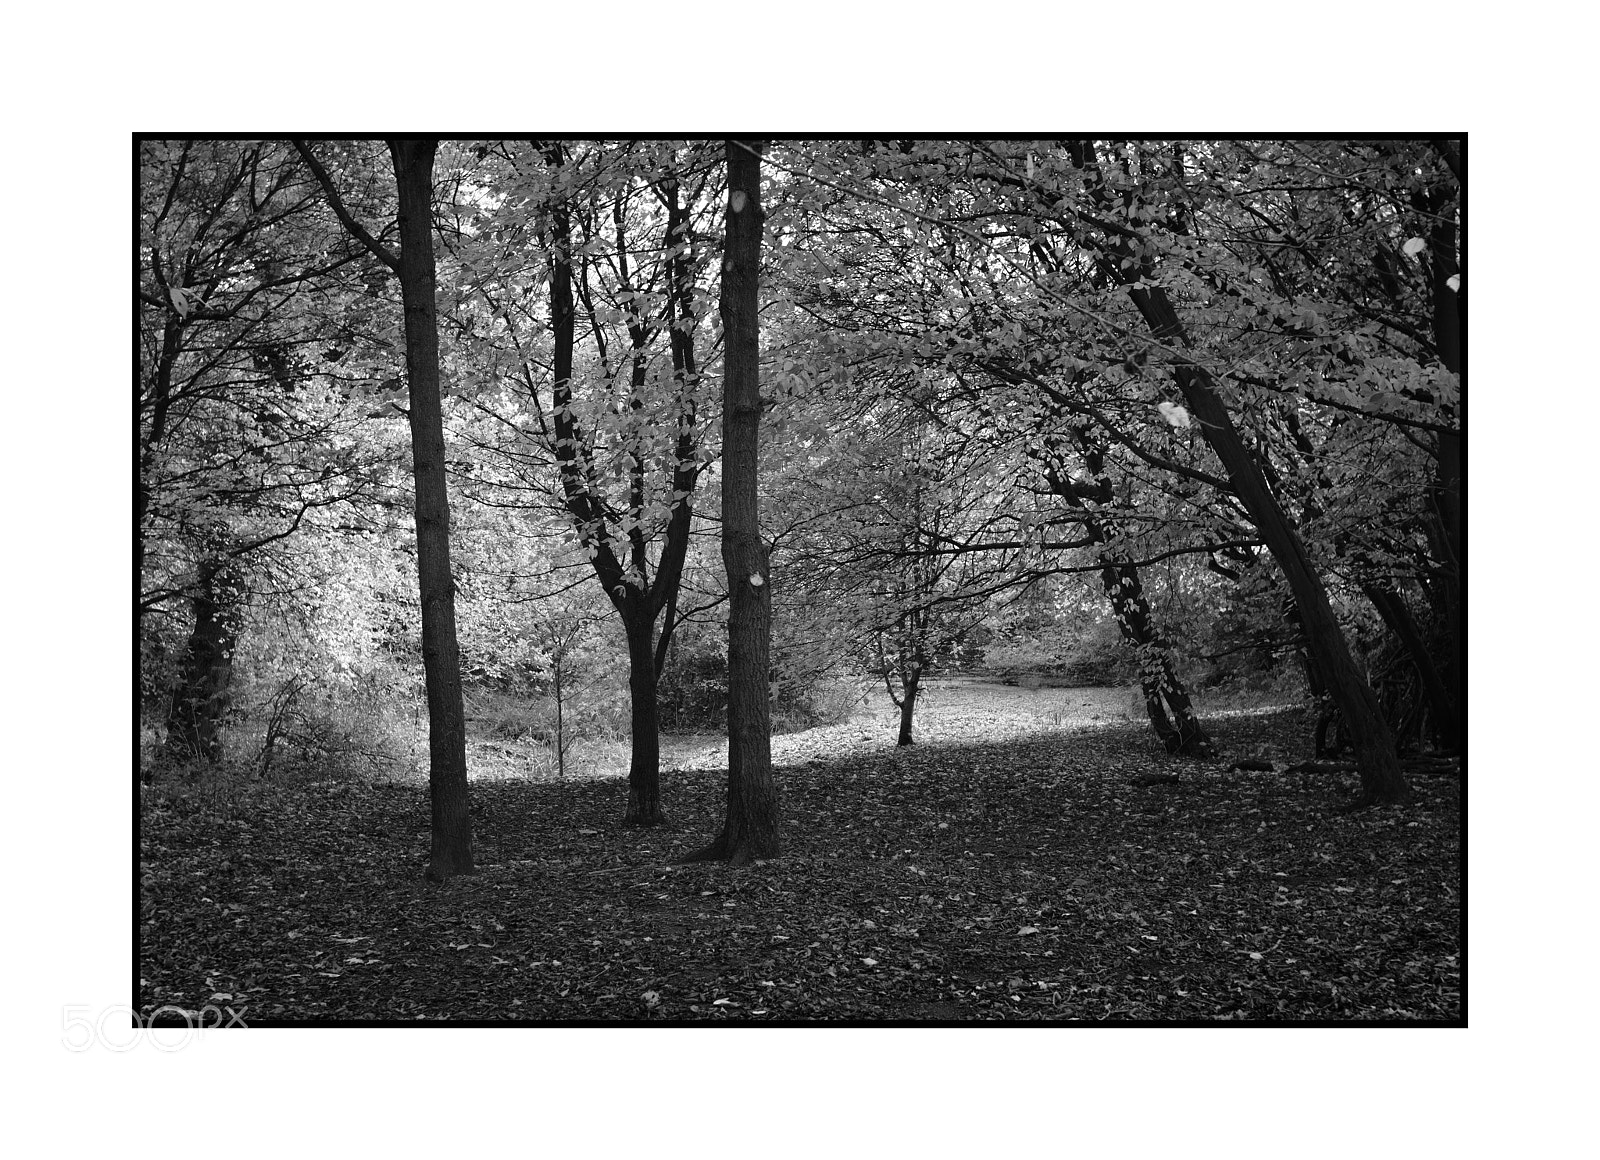 Fujifilm X-Pro2 sample photo. Autumnal woodland photography